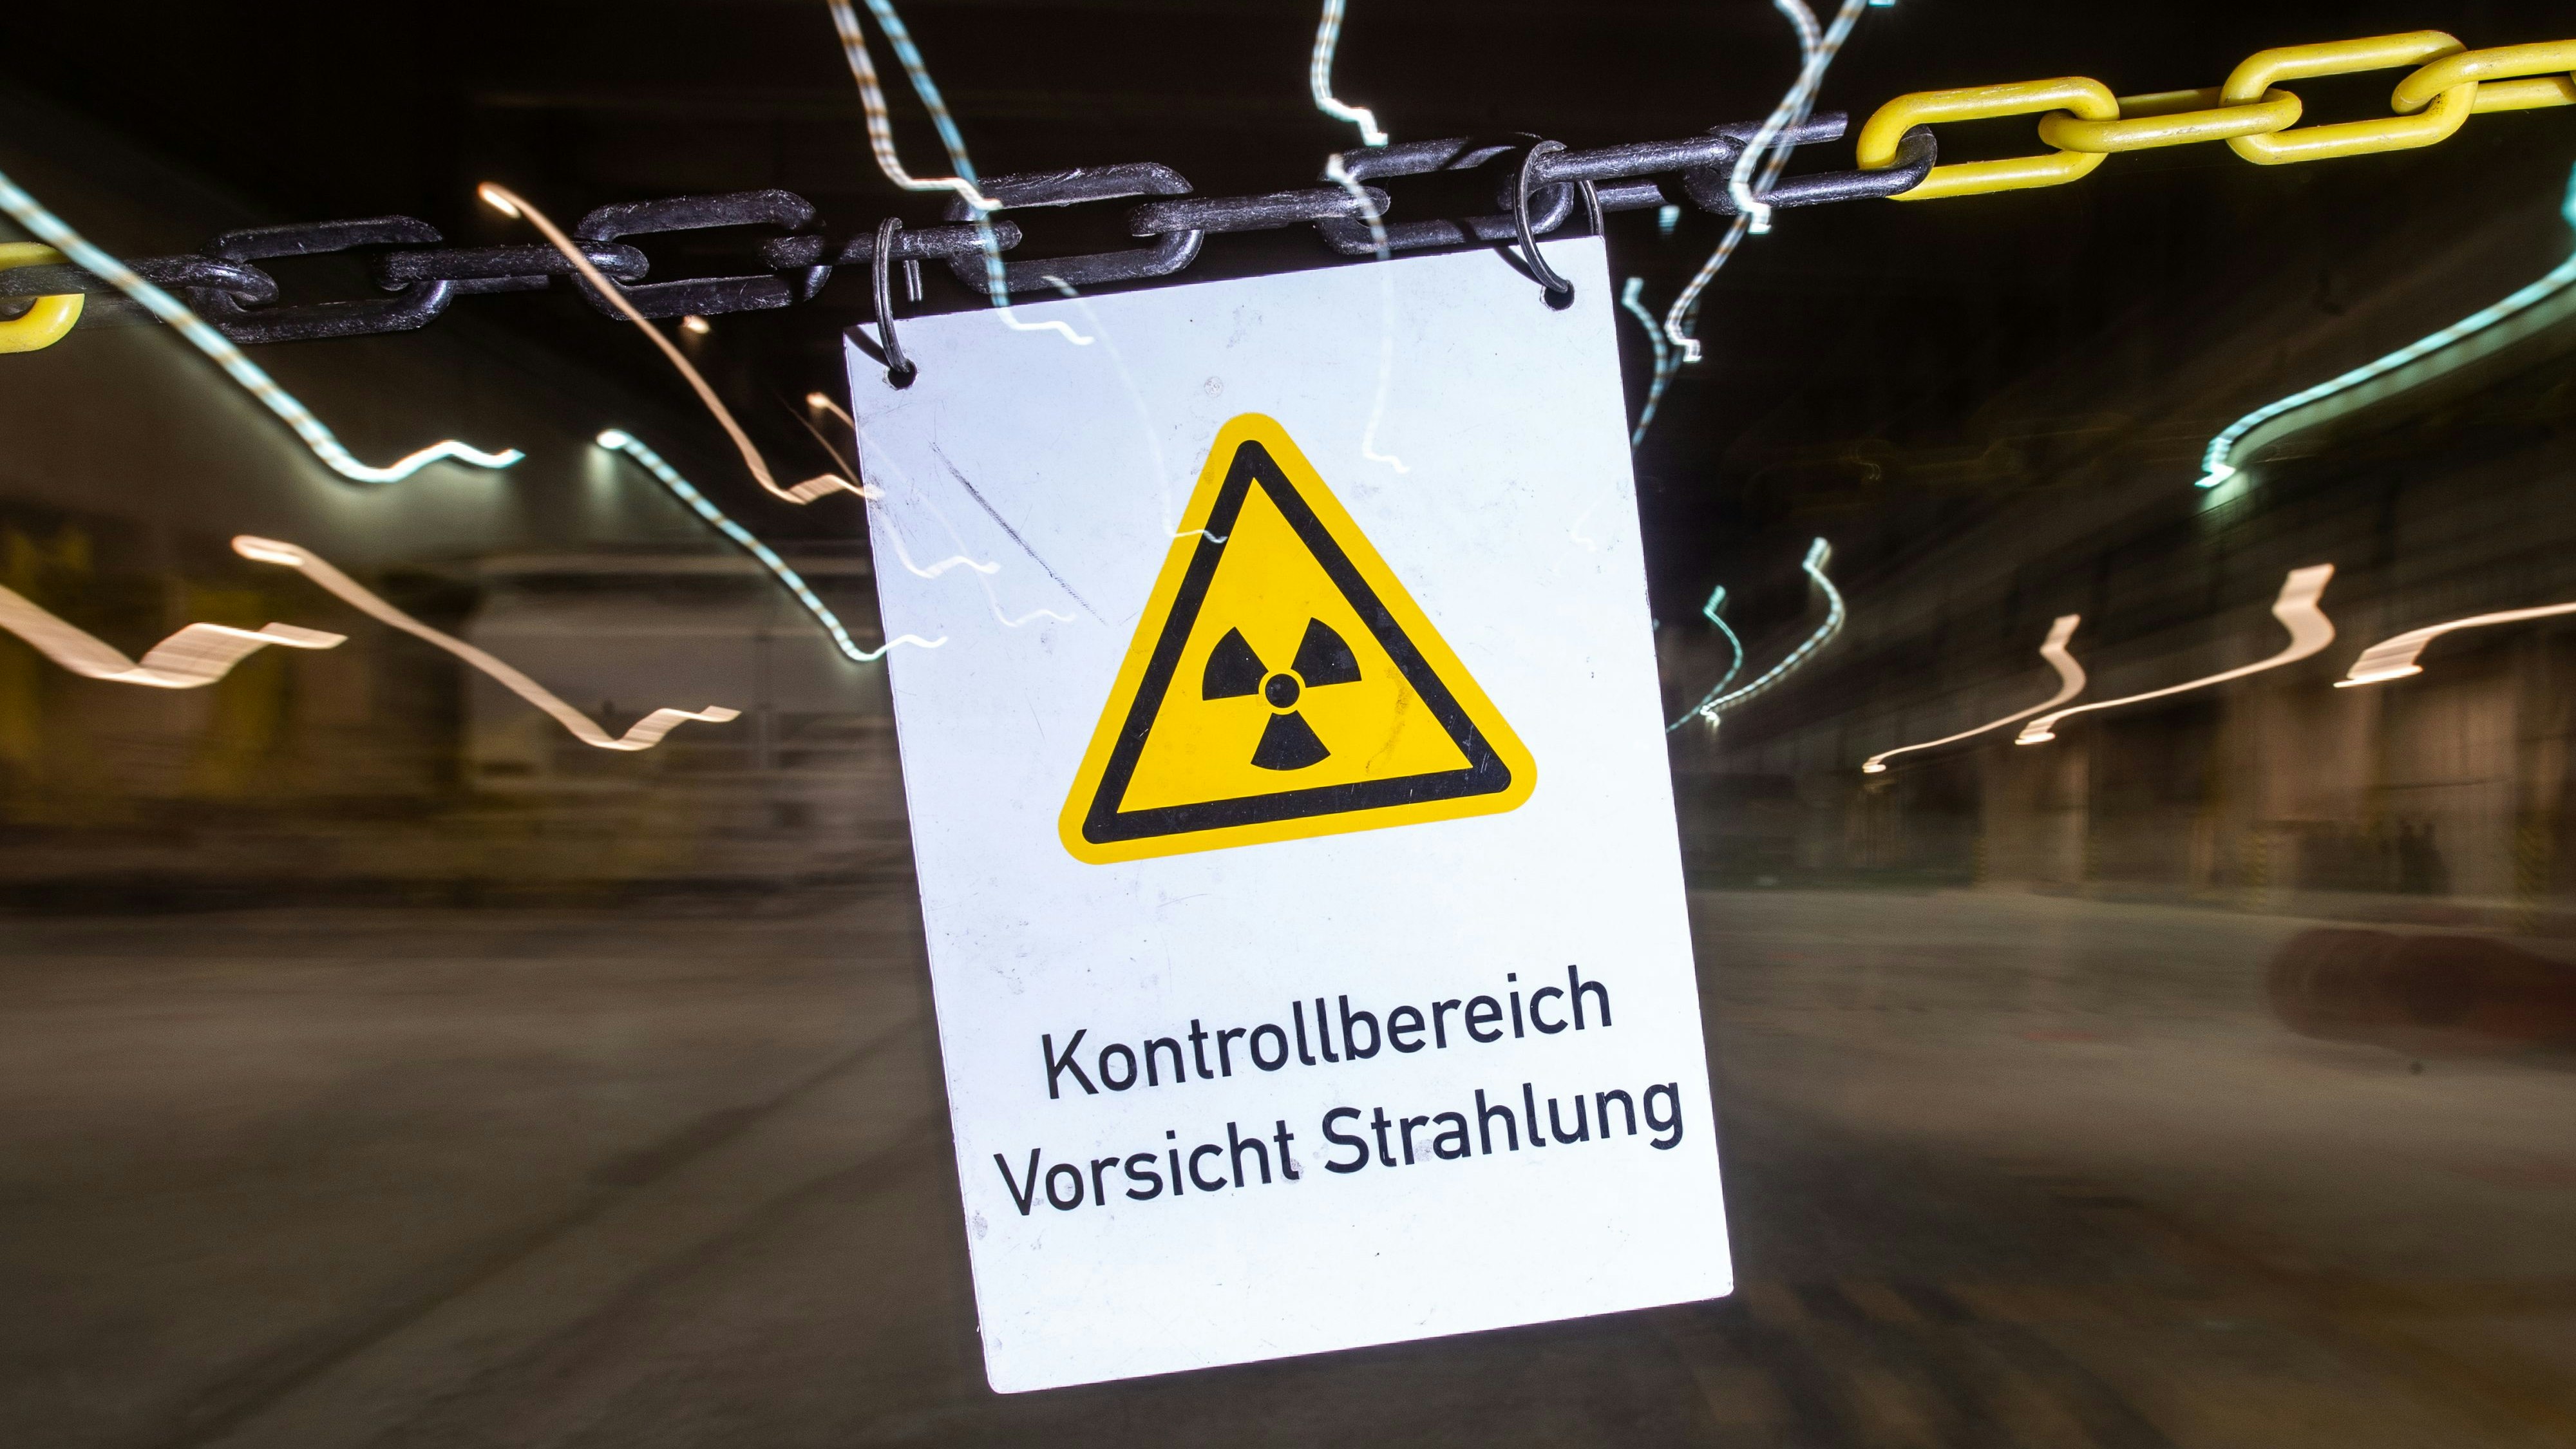 Die Suche nach dem endgültigen Standort für den hochradioaktiven deutschen Atommüll läuft. Foto: dpa/Bäuml